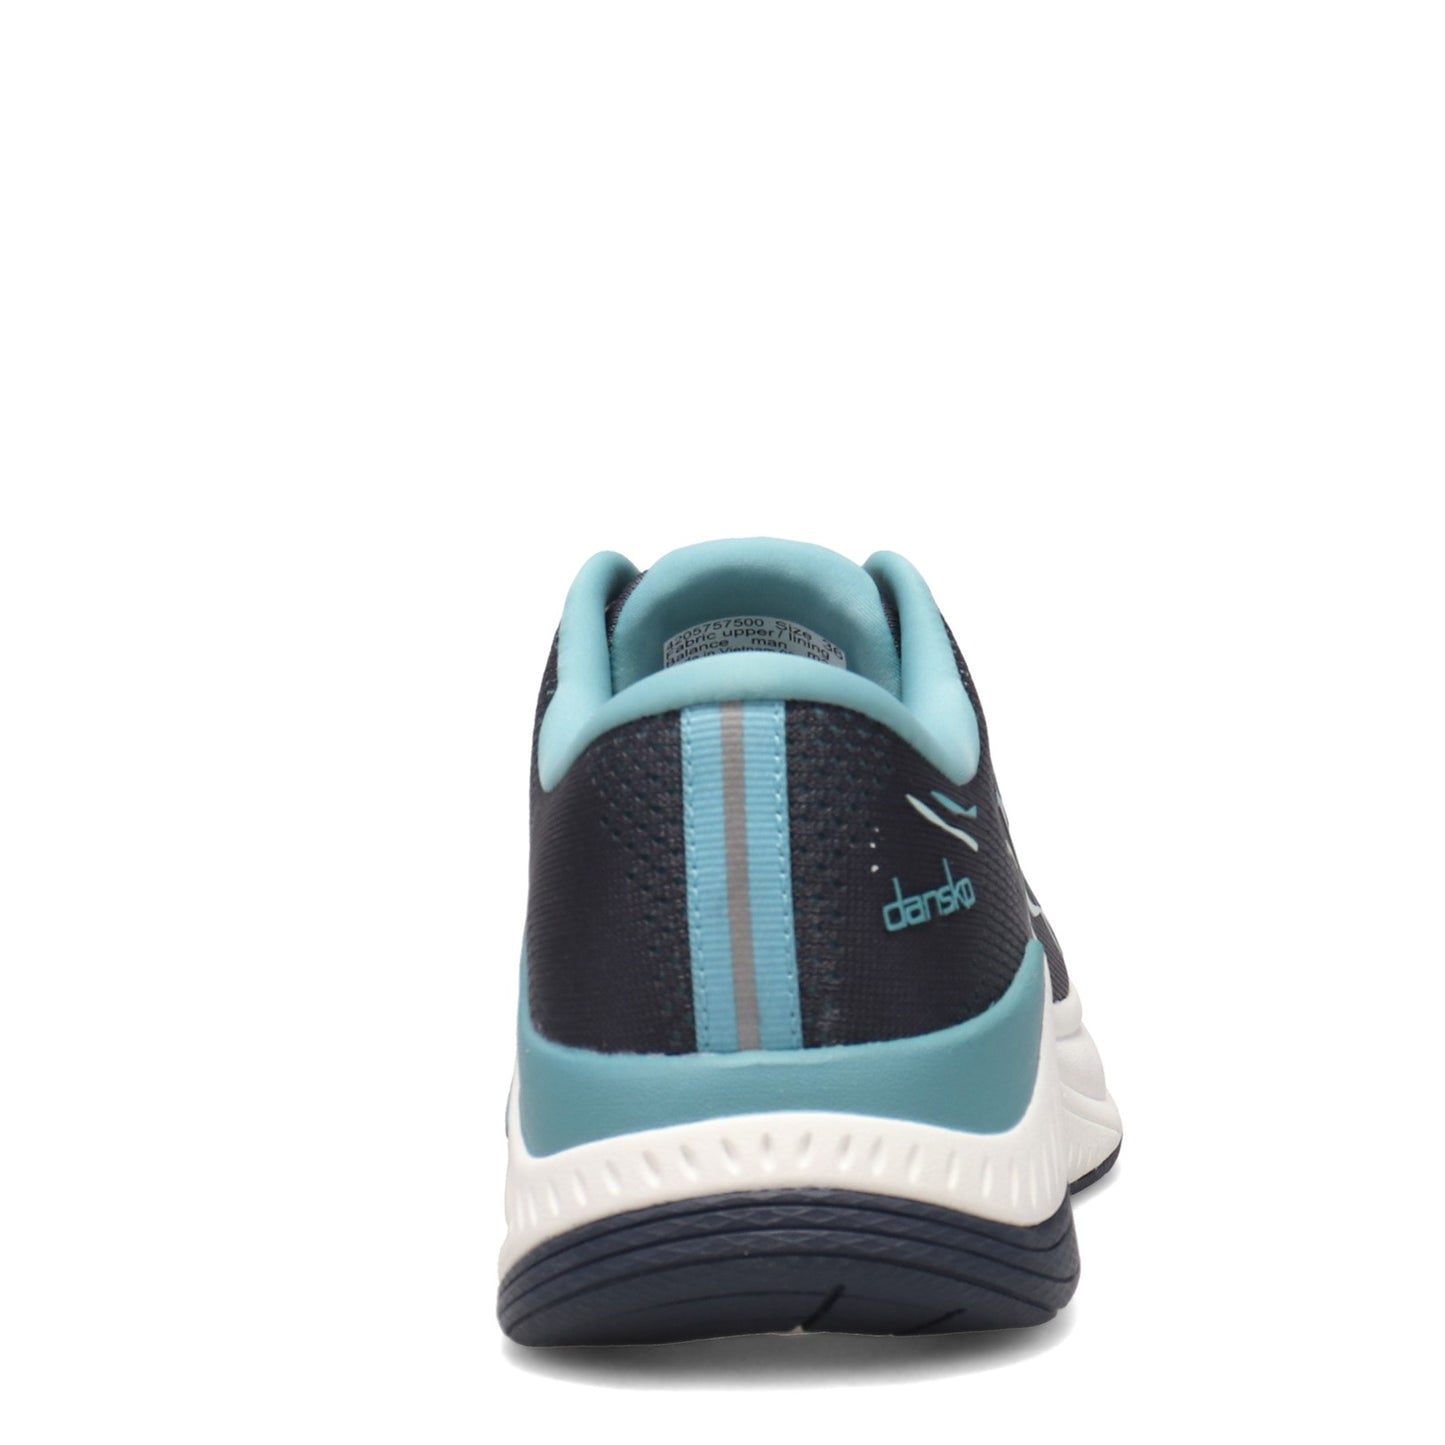 Peltz Shoes  Women's Dansko Pace Sneaker Navy 4205-757500